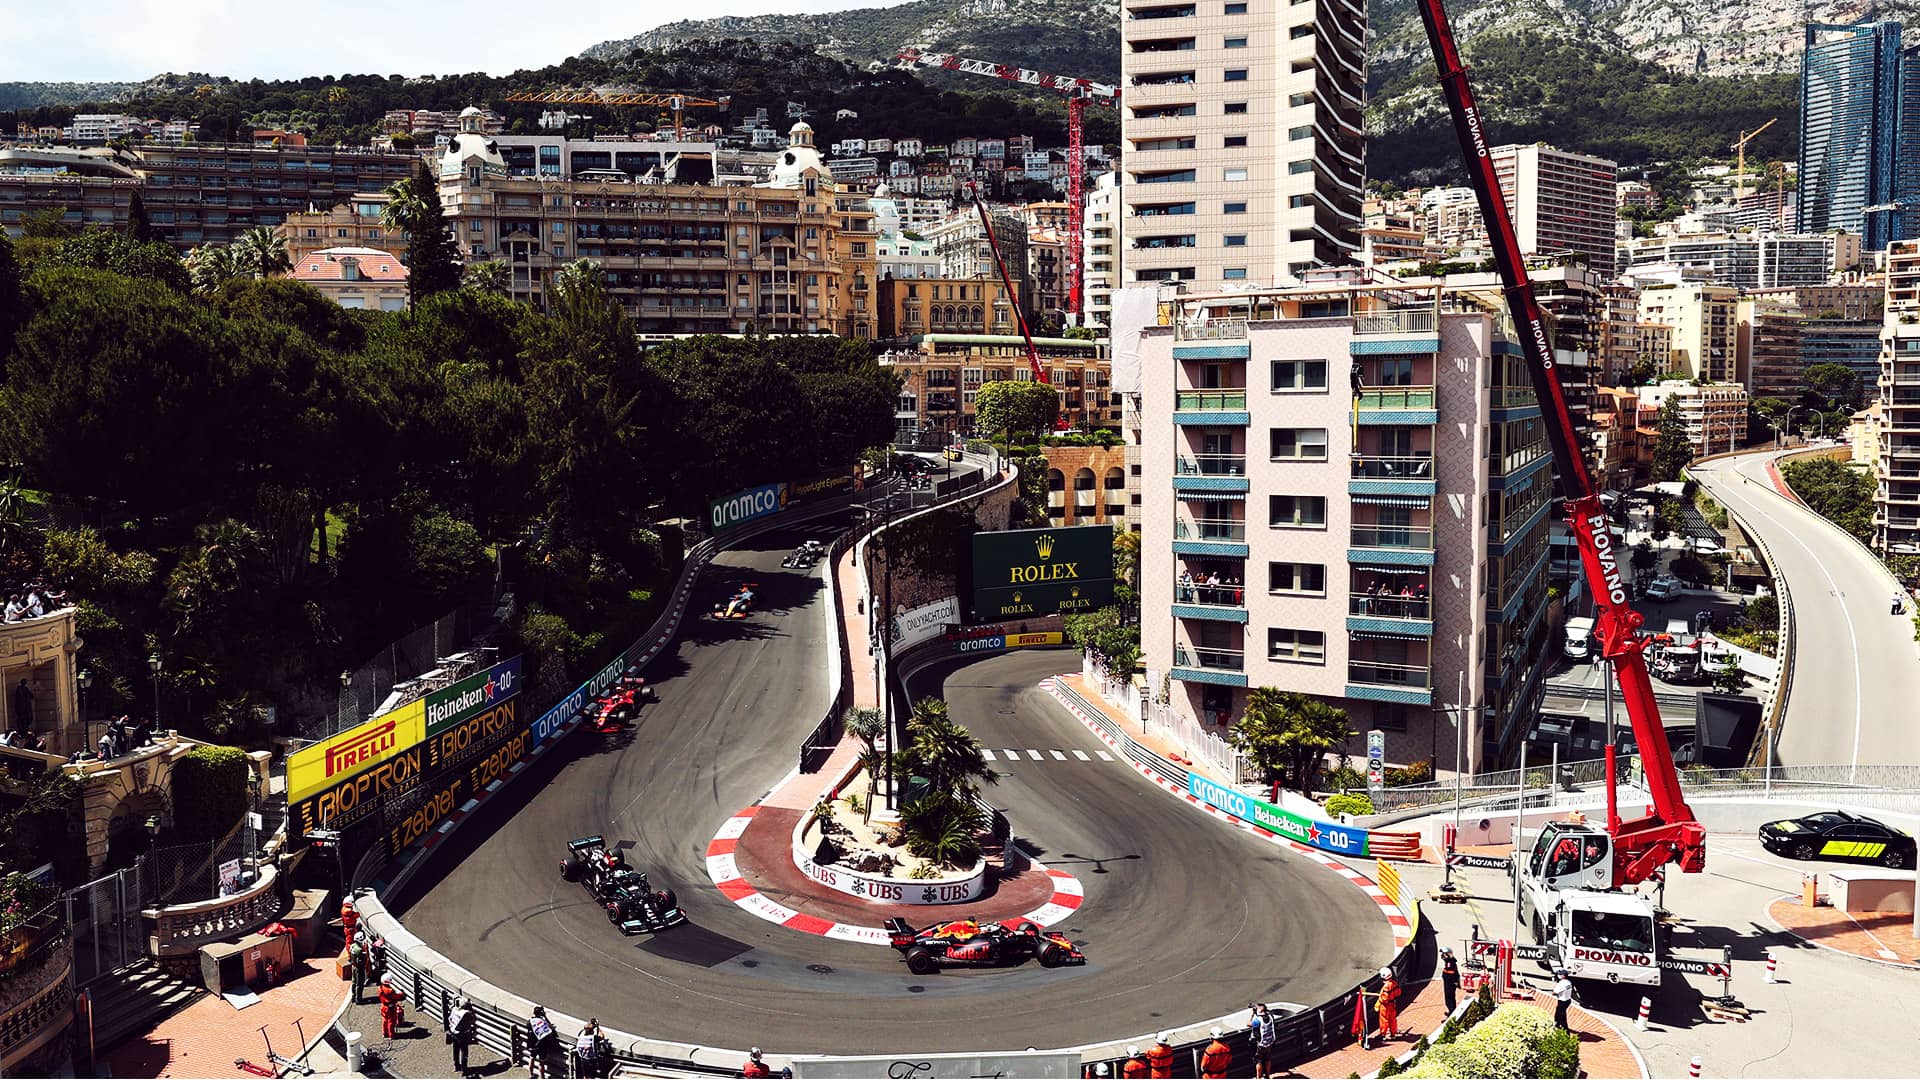 Monako Grand Prix's